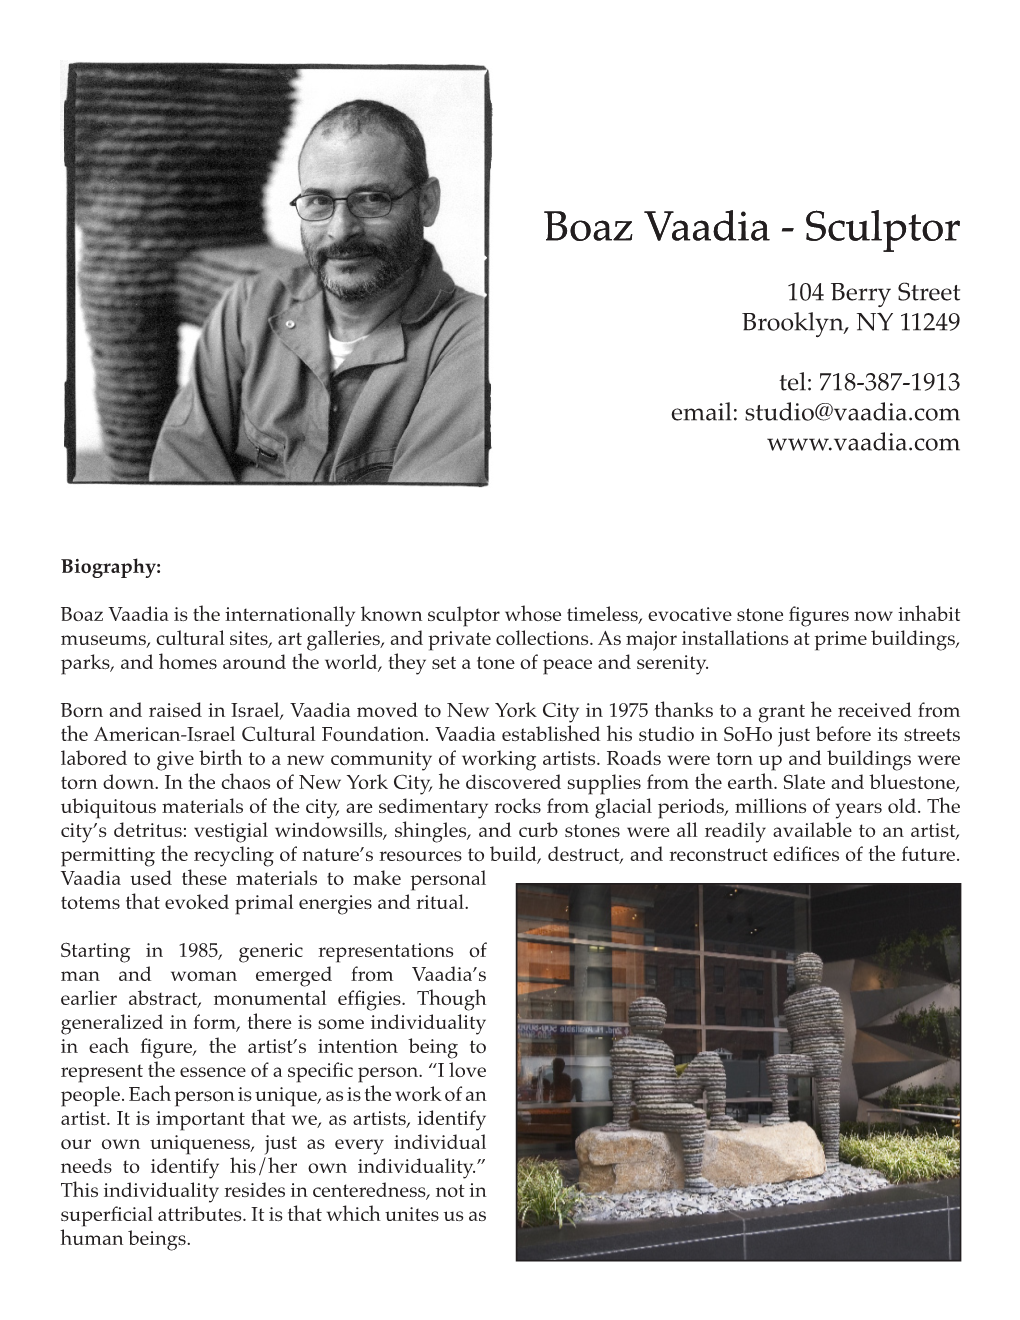 Sculptor Boaz Vaadia